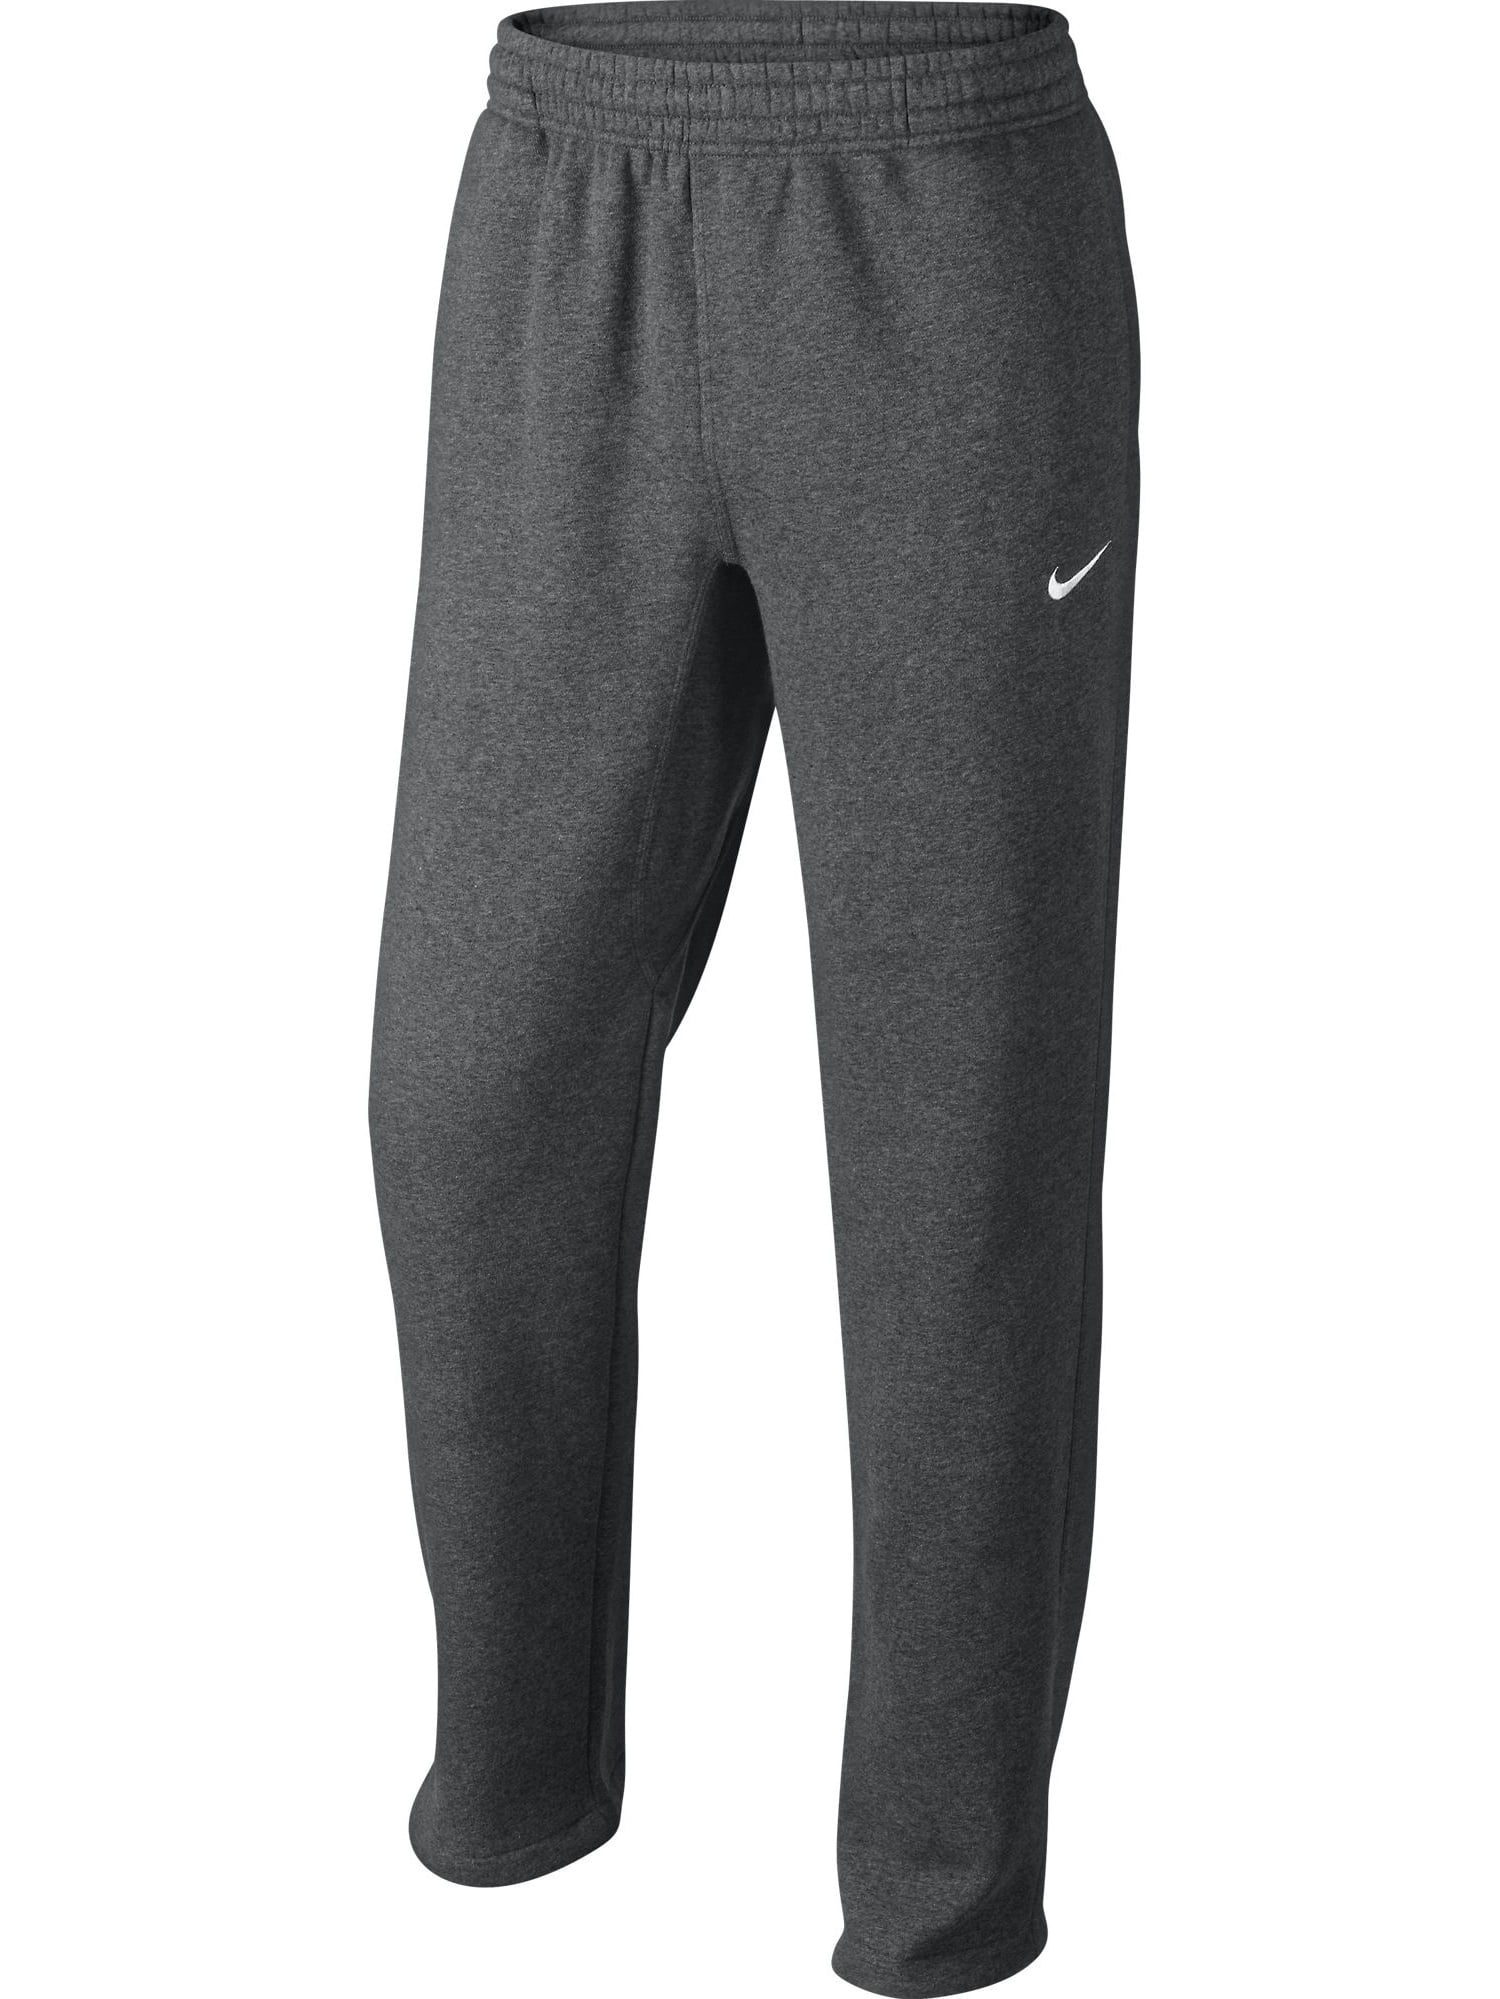 Nike Mens Active Fleece - Walmart.com